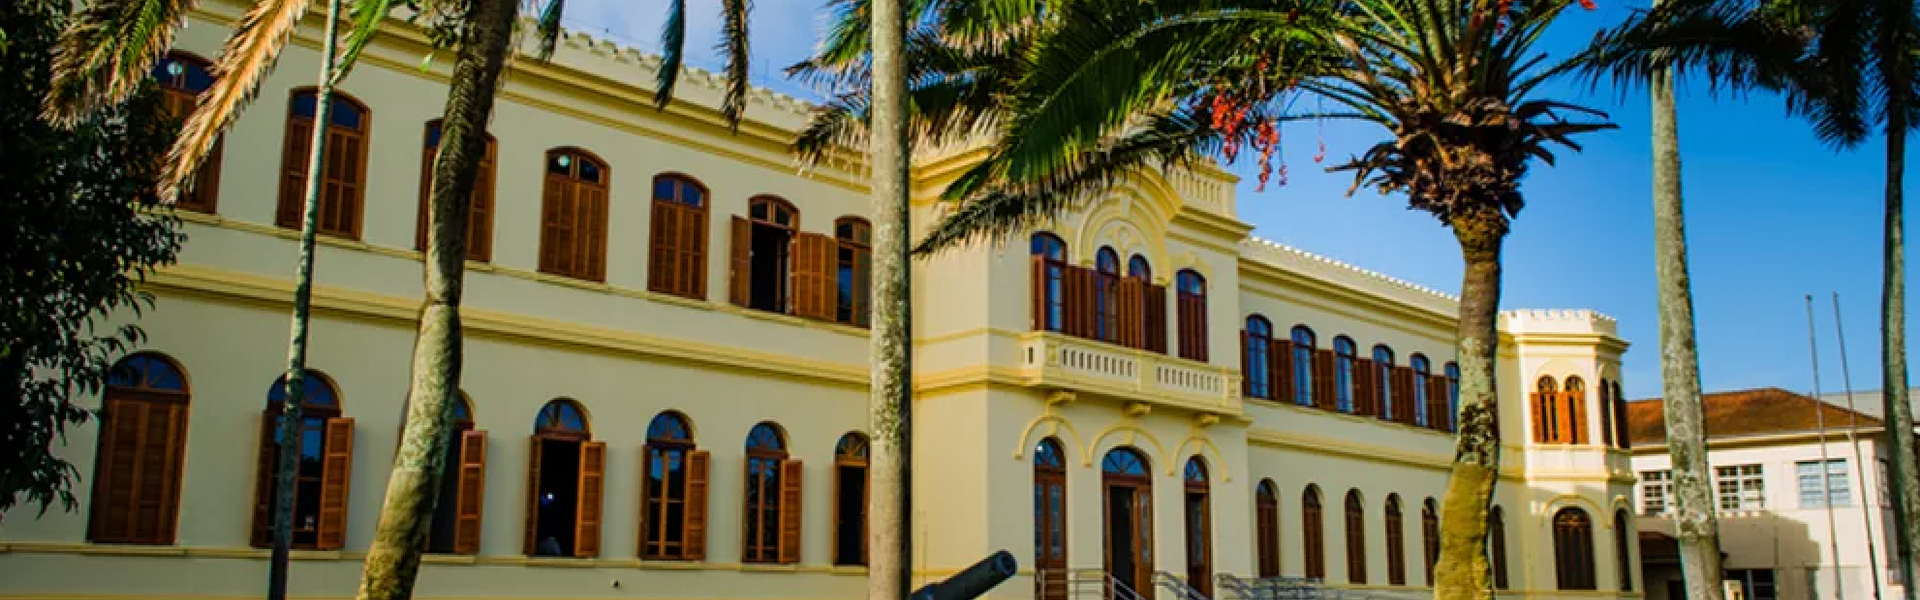 Museu de Pesca em Santos-SP passará por restauração